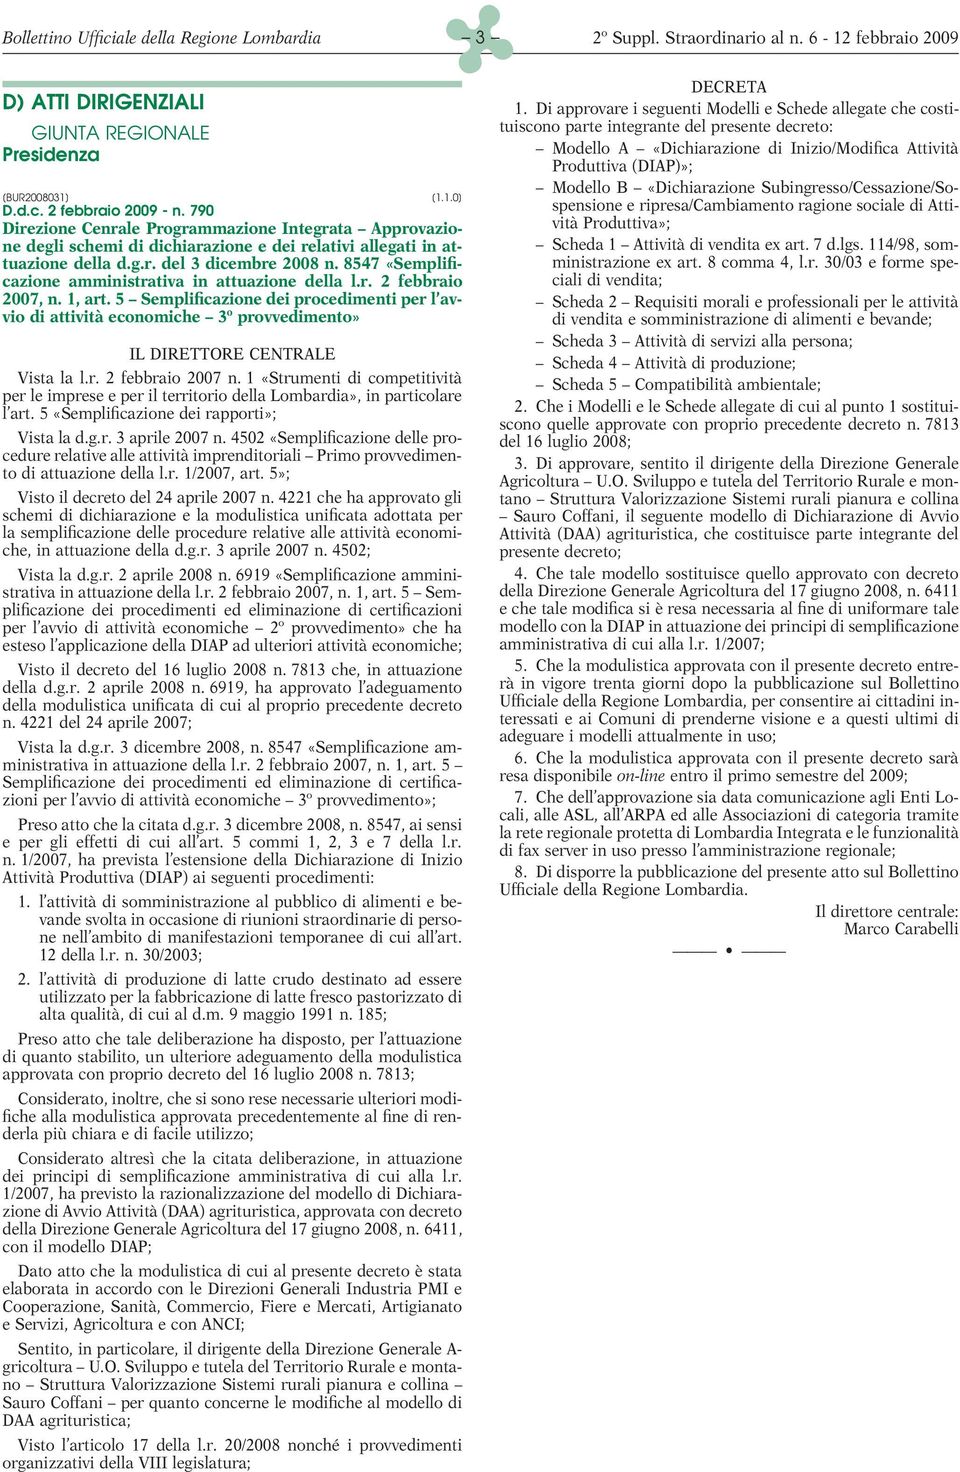 8547 «Semplificazione amministrativa in attuazione della l.r. 2 febbraio 2007, n. 1, art.